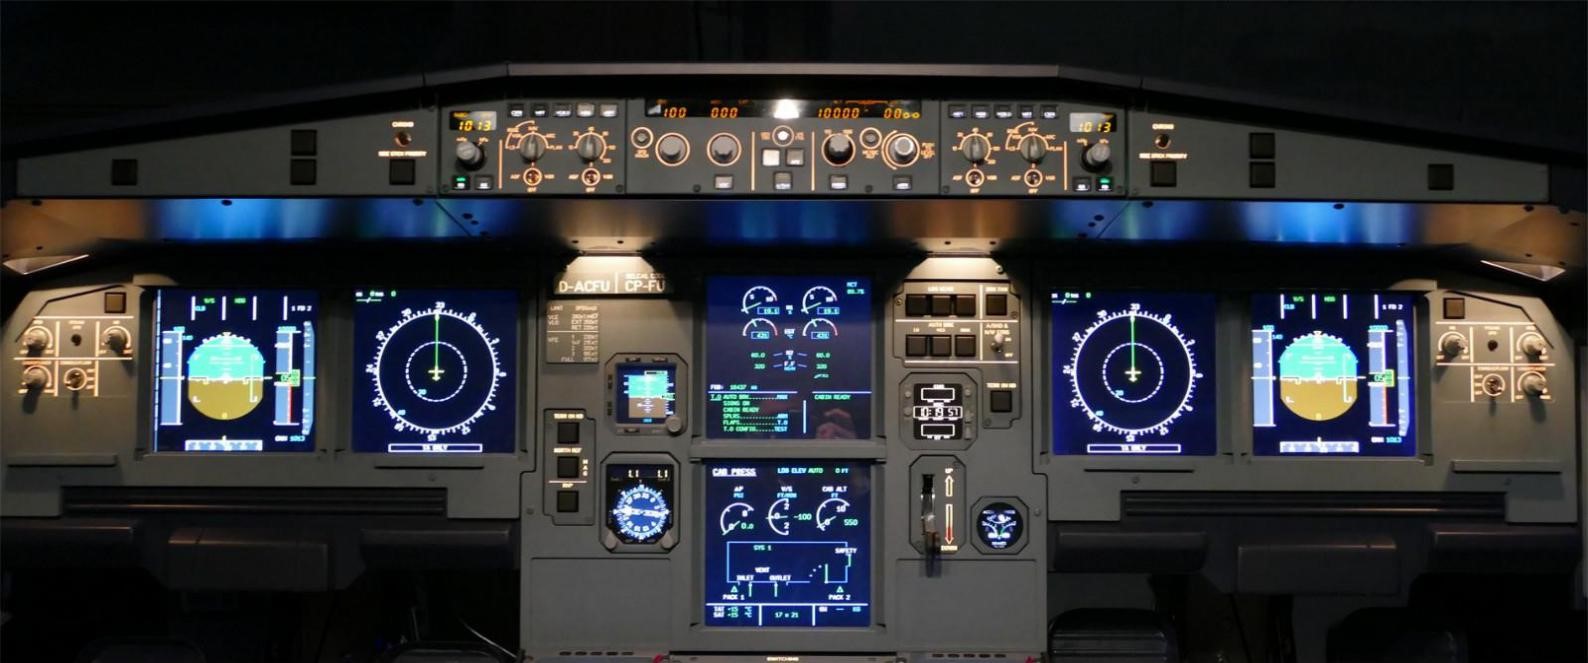 飞行者联盟空客A320模拟舱 整舱产品发布！-3375 